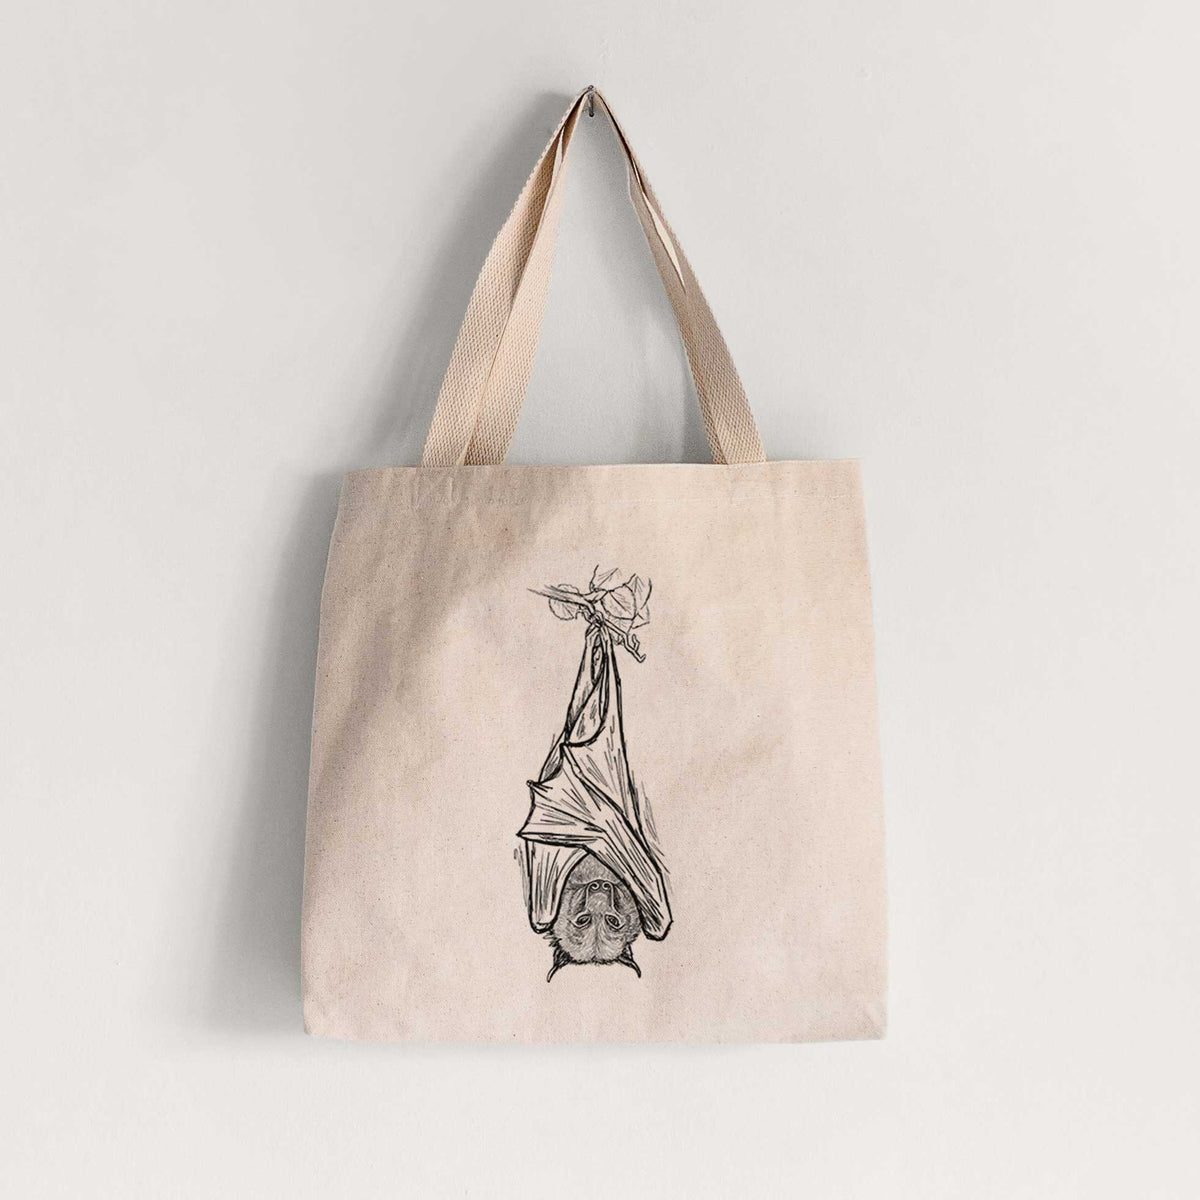 Pteropus vampyrus - Large Flying Fox - Tote Bag